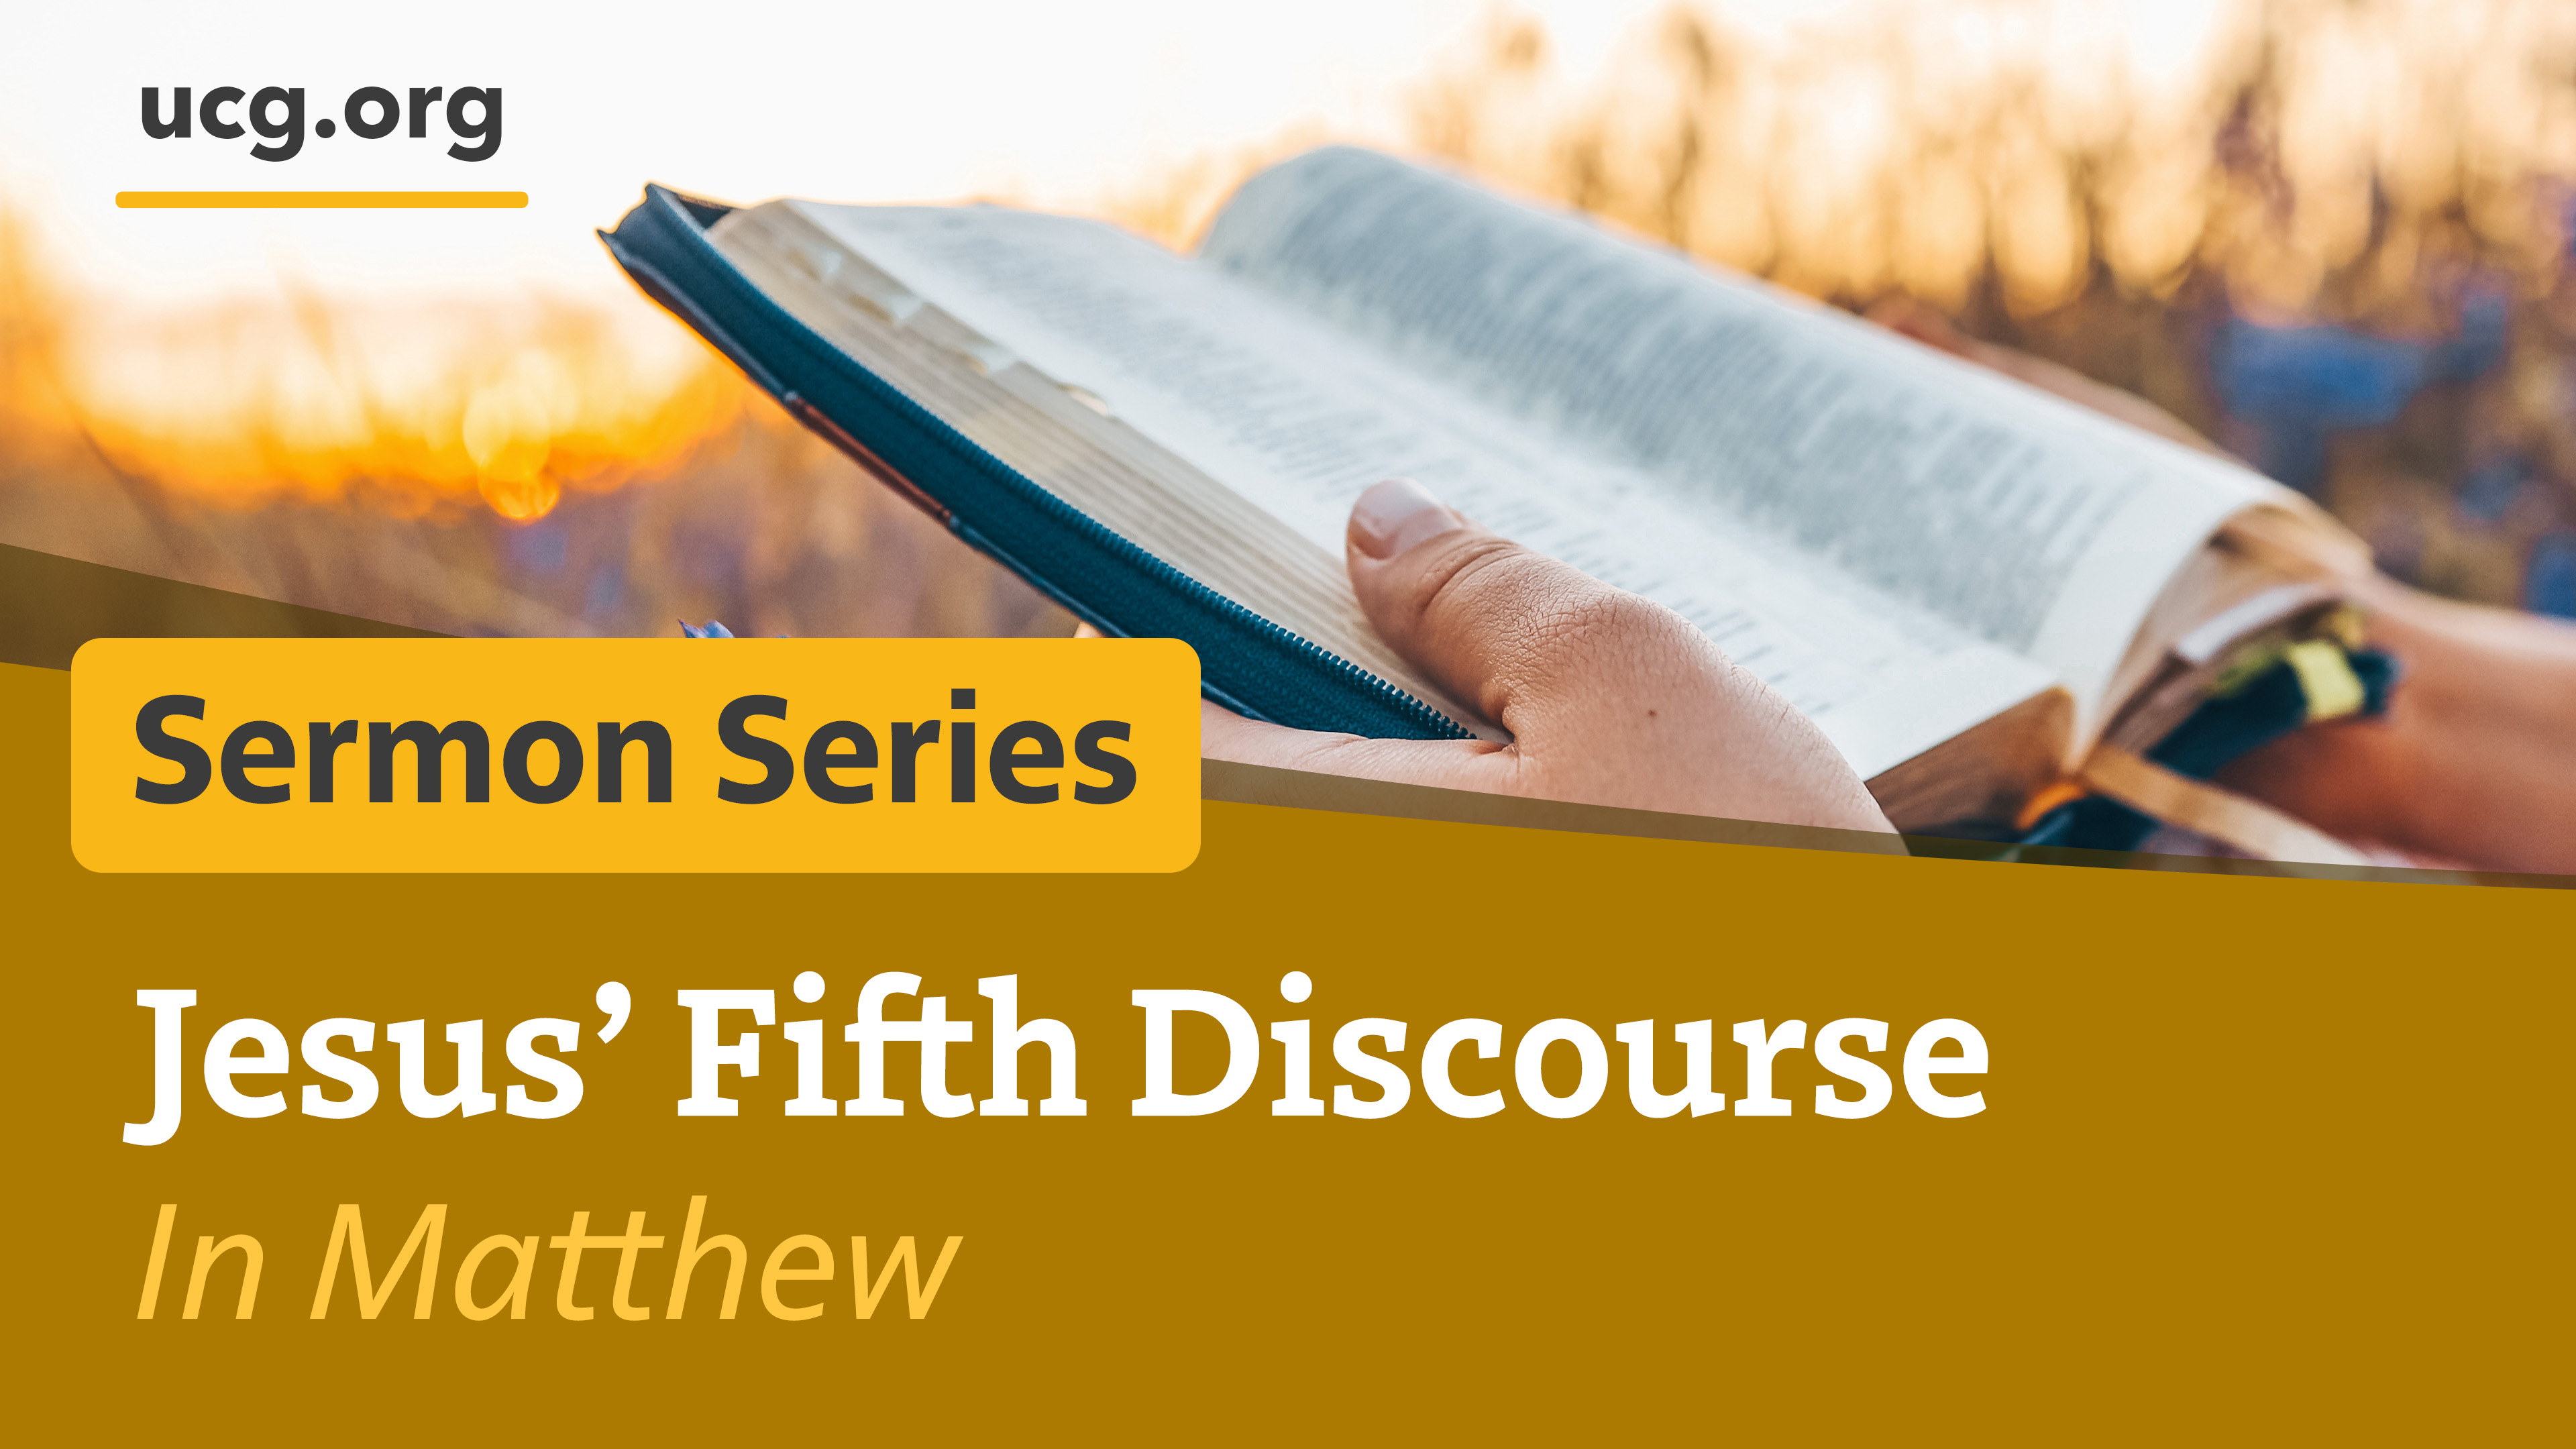 Matthew's Five Discourses of Jesus Christ